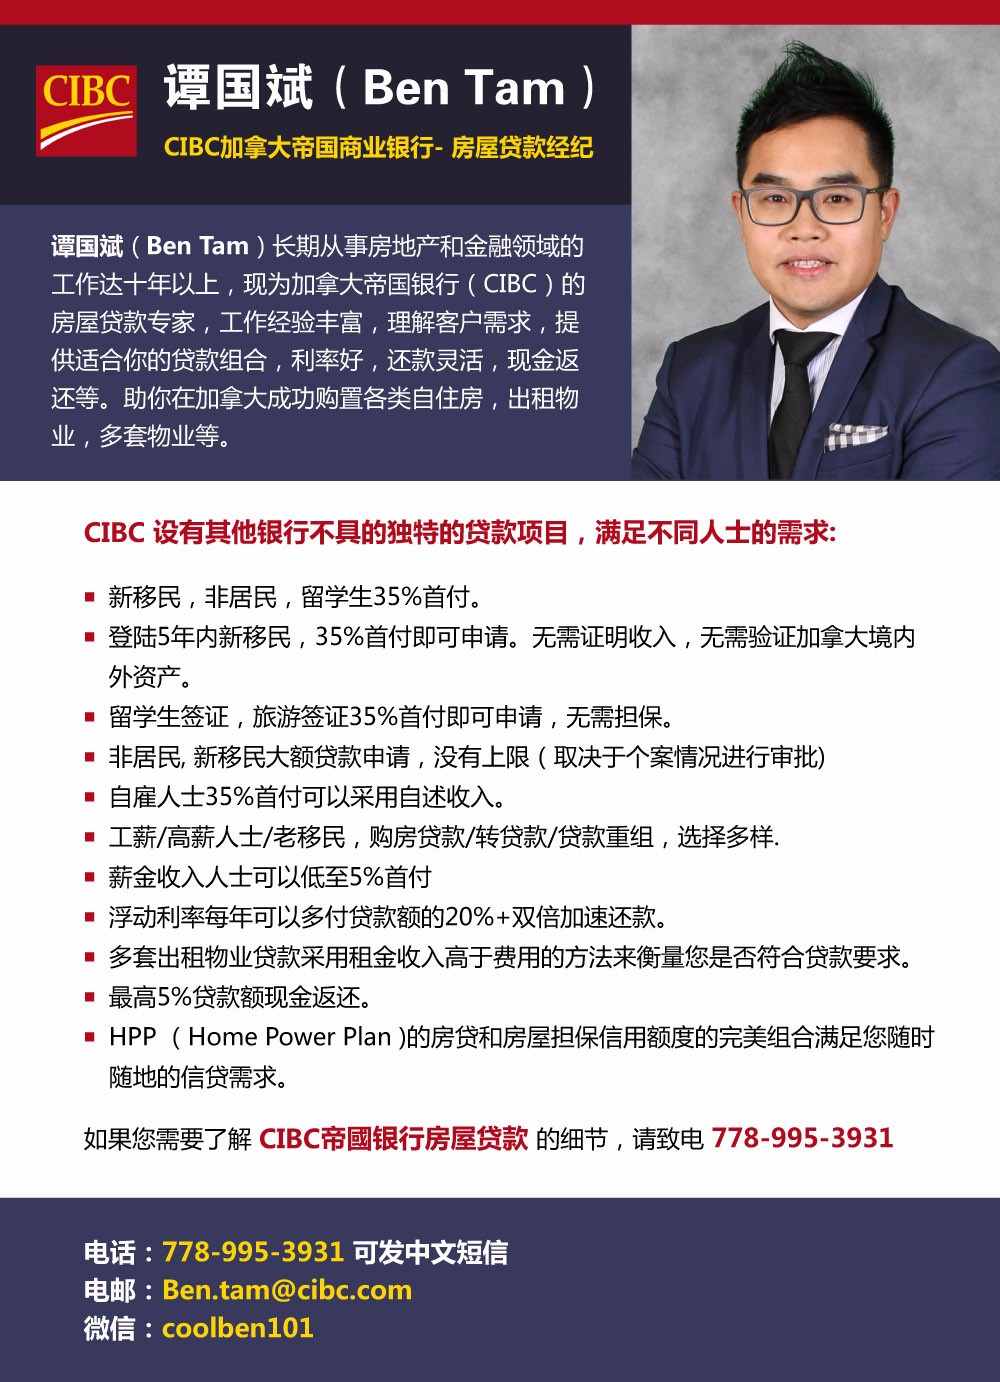 谭国斌Ben Tam——CIBC加拿大帝国商业银行房屋贷款经纪